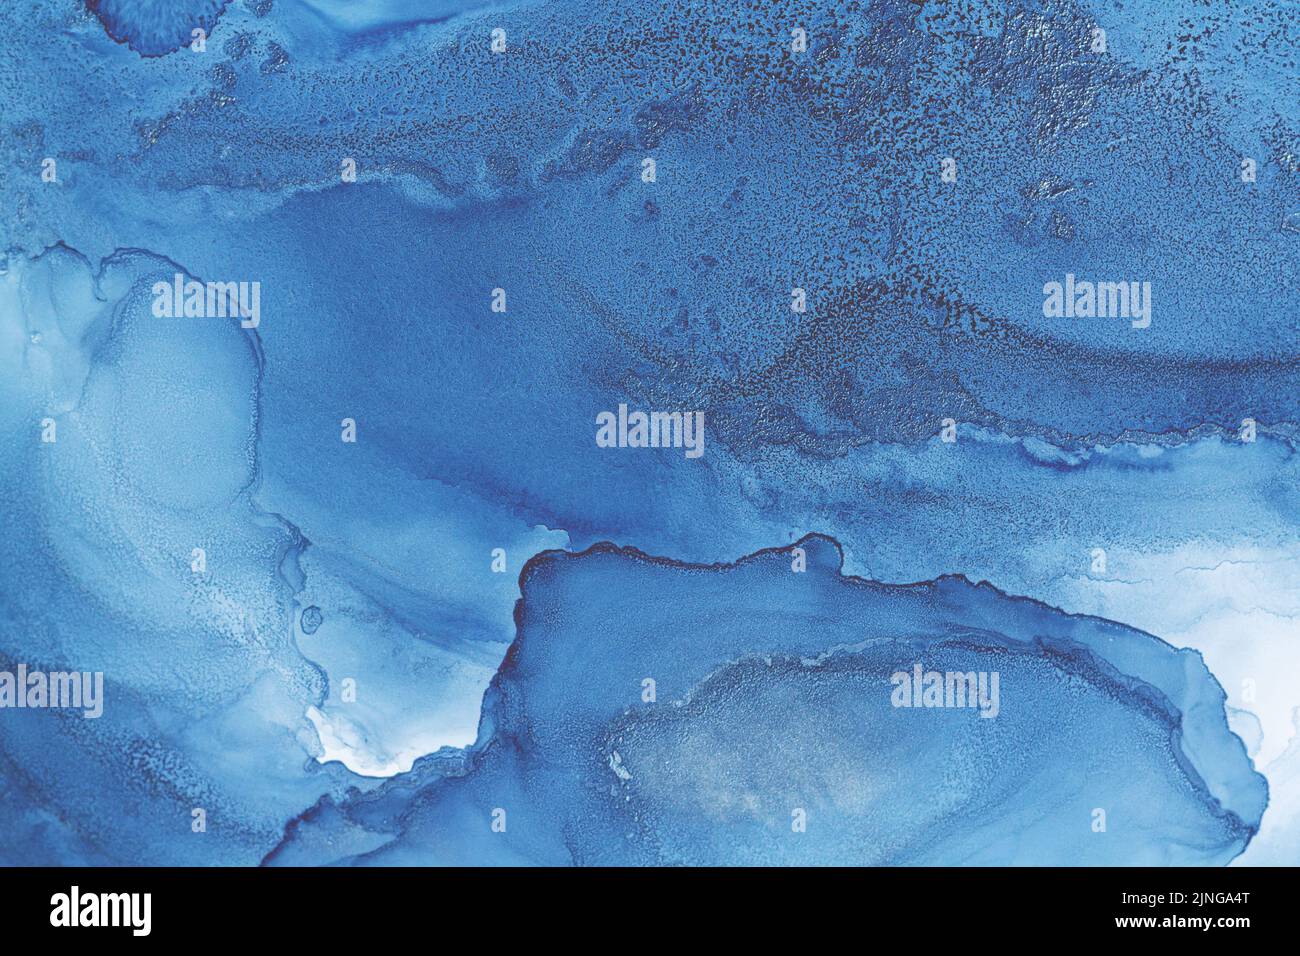 Hermoso fondo abstracto azul y blanco acuarela Foto de stock